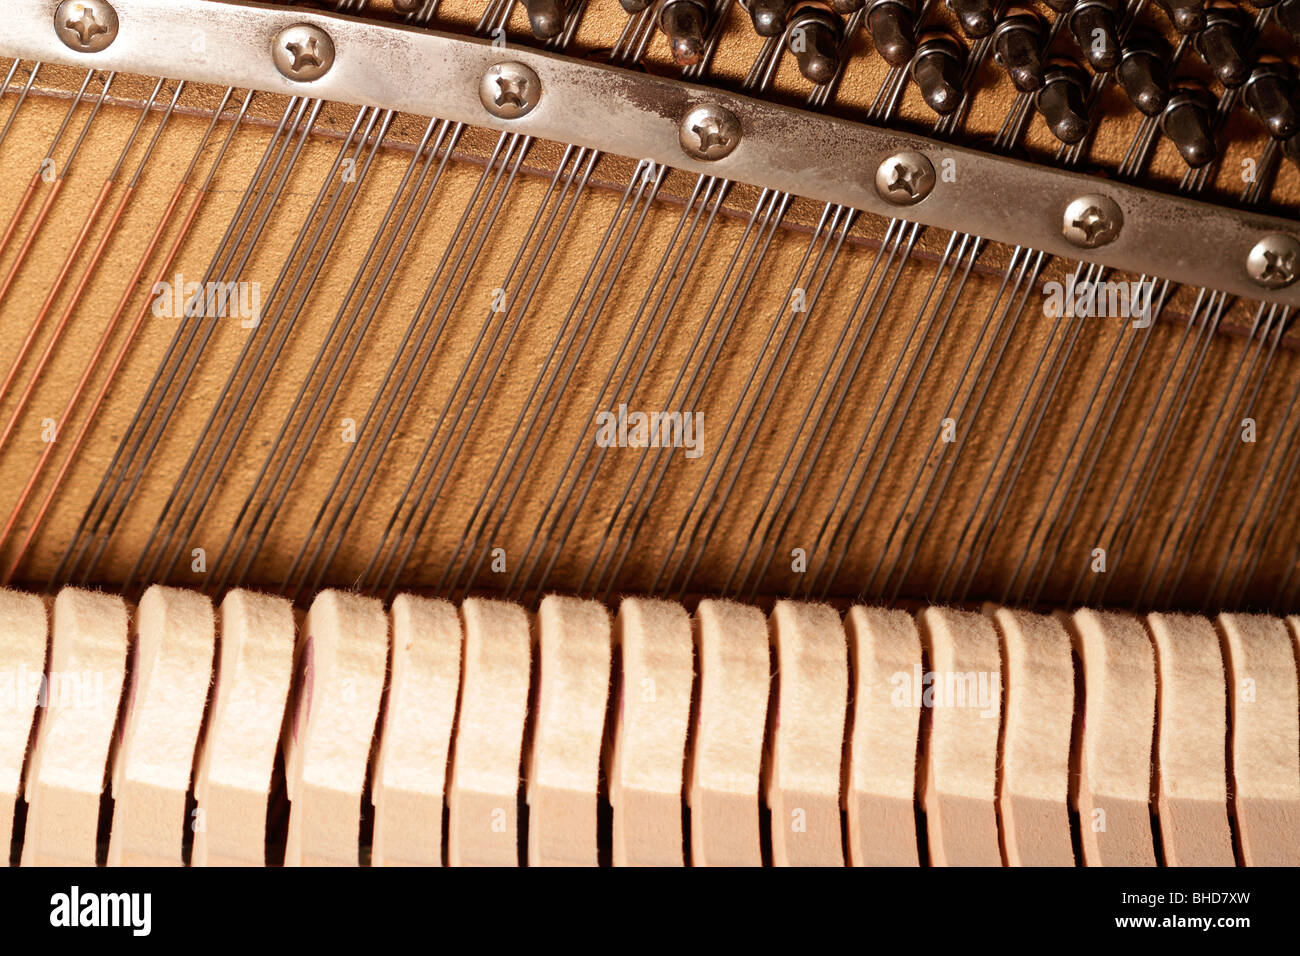 Piano harp and felt hammers Stock Photo